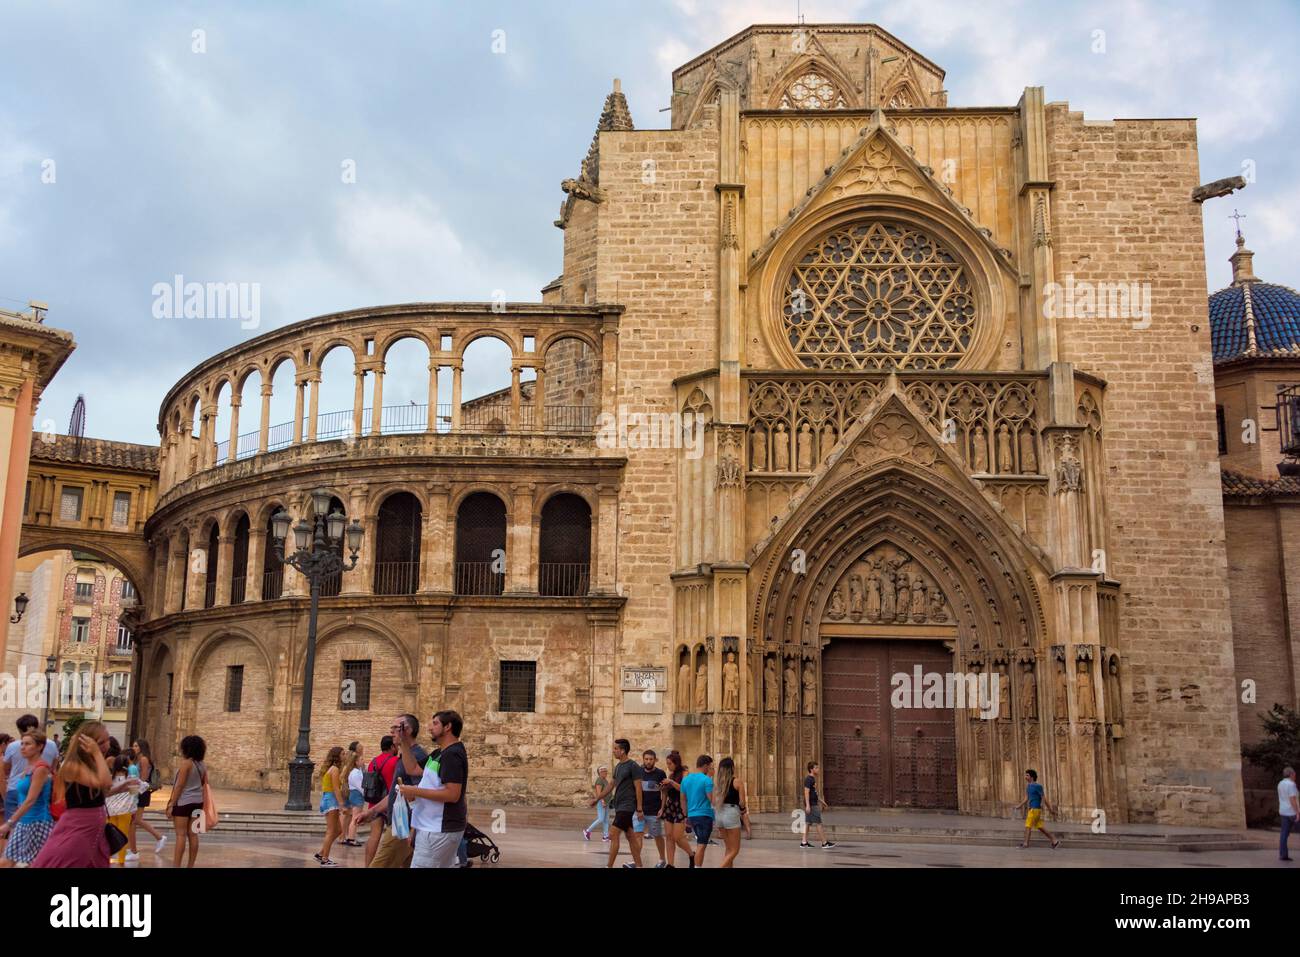 La cathédrale de Valence, Valence, Espagne Banque D'Images